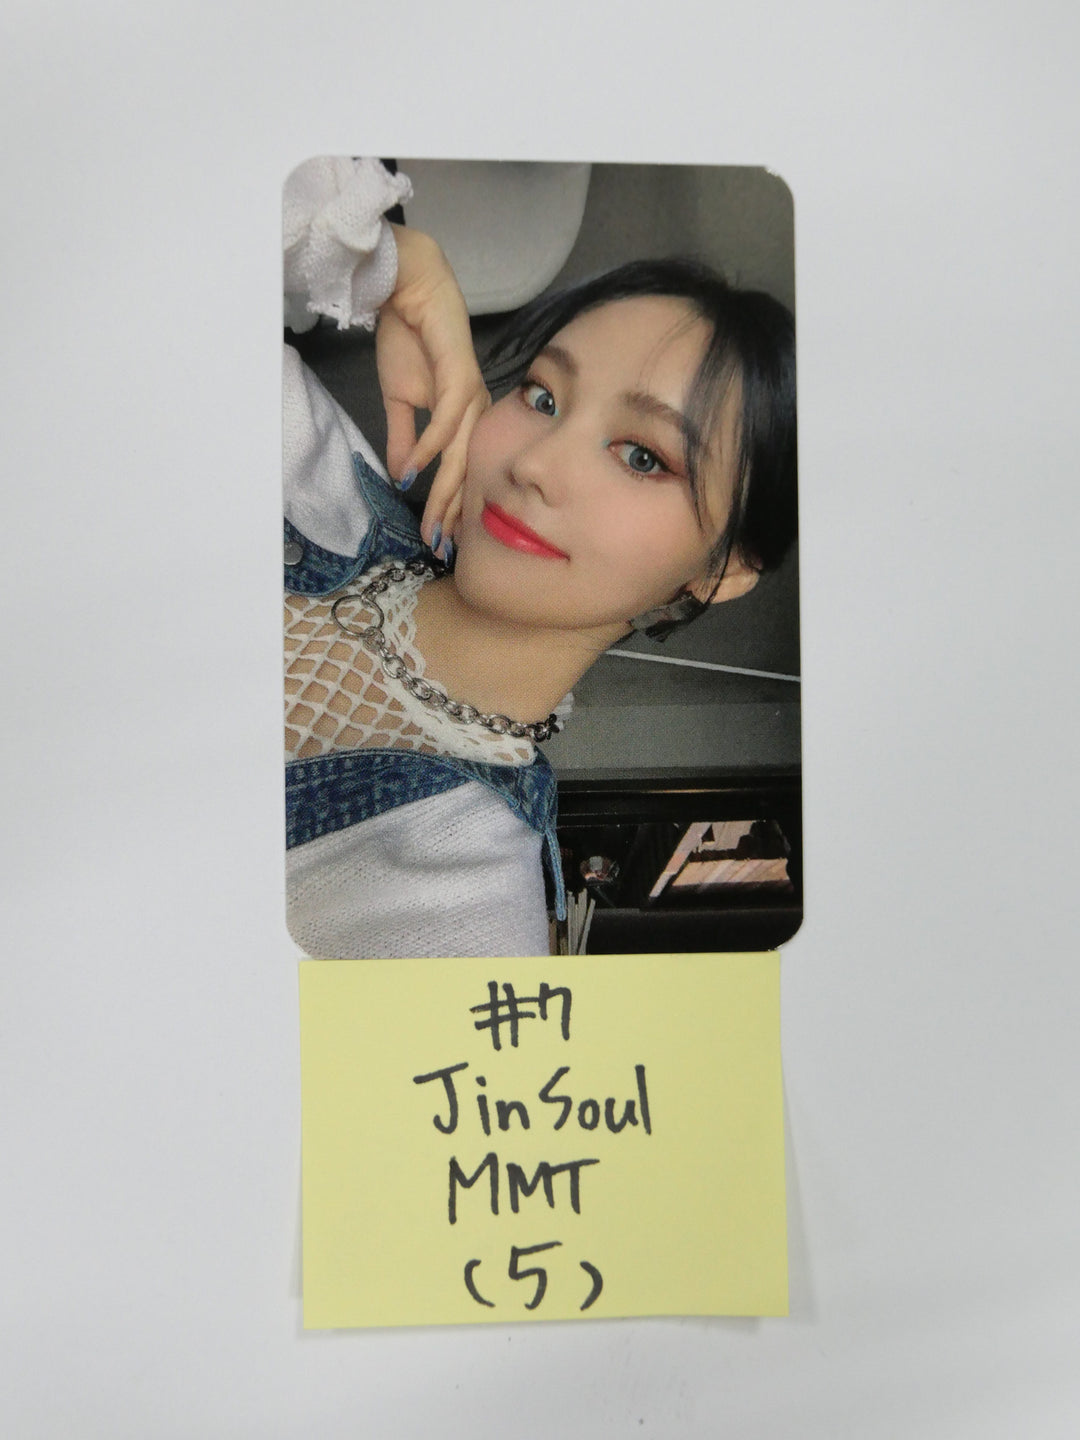 이달의 소녀 '&amp;' - MMT 팬사인회 포토카드